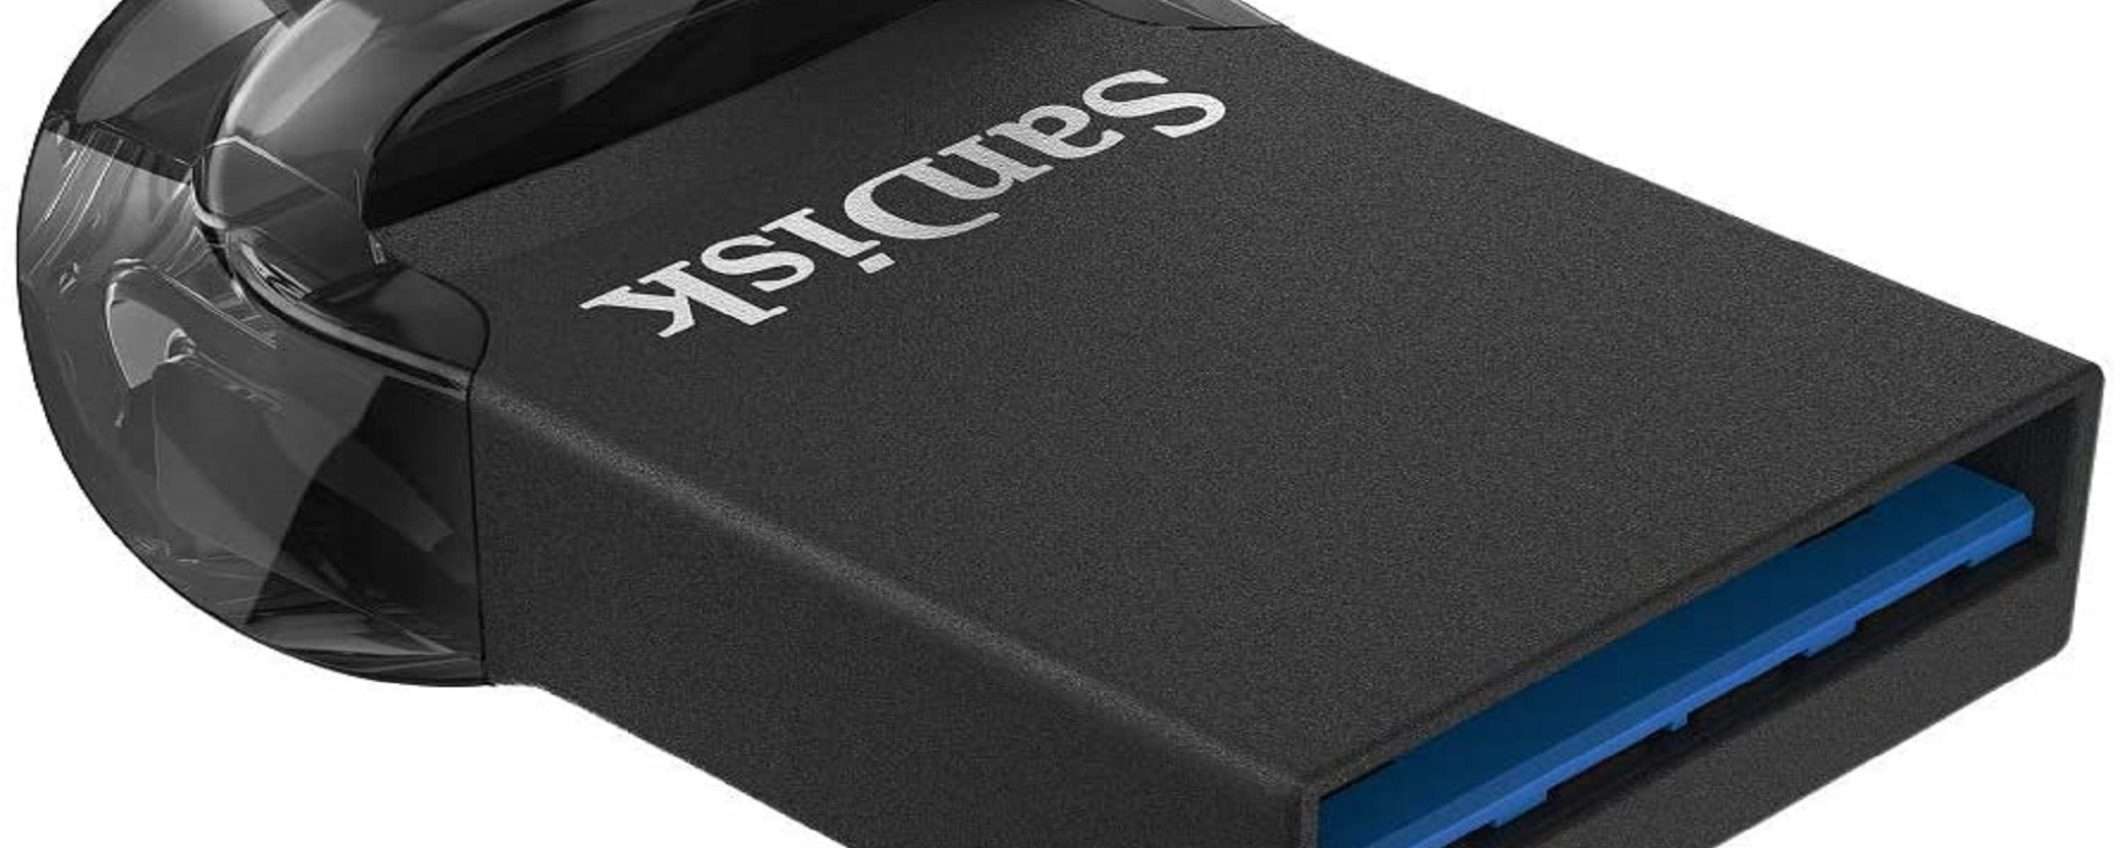 SanDisk Ultra Fit da 16GB al prezzo più basso di sempre